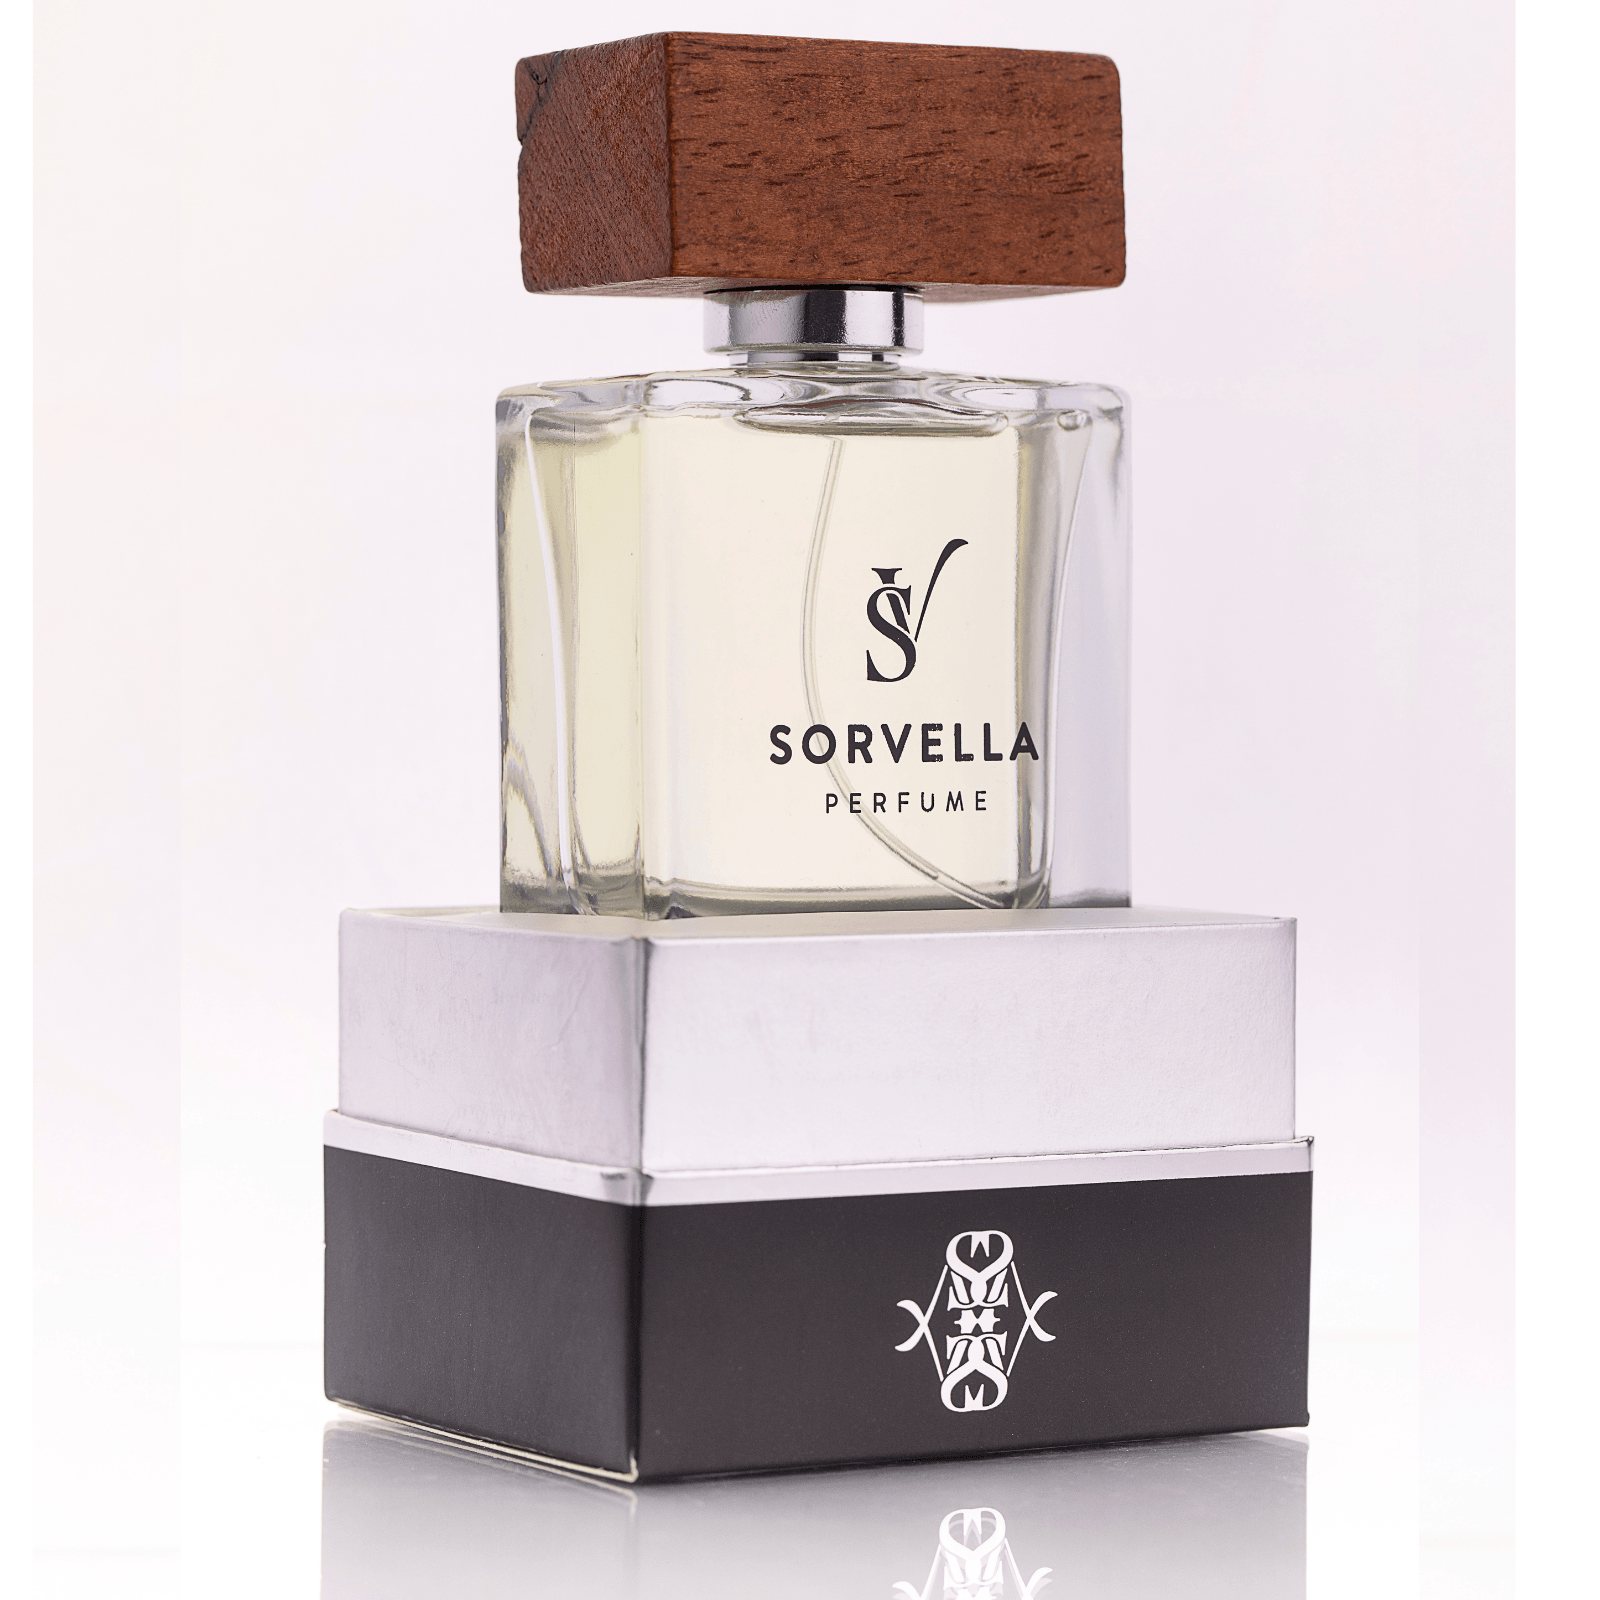 S24 - The One 50 ml Sorvella Spicy Men's Perfume